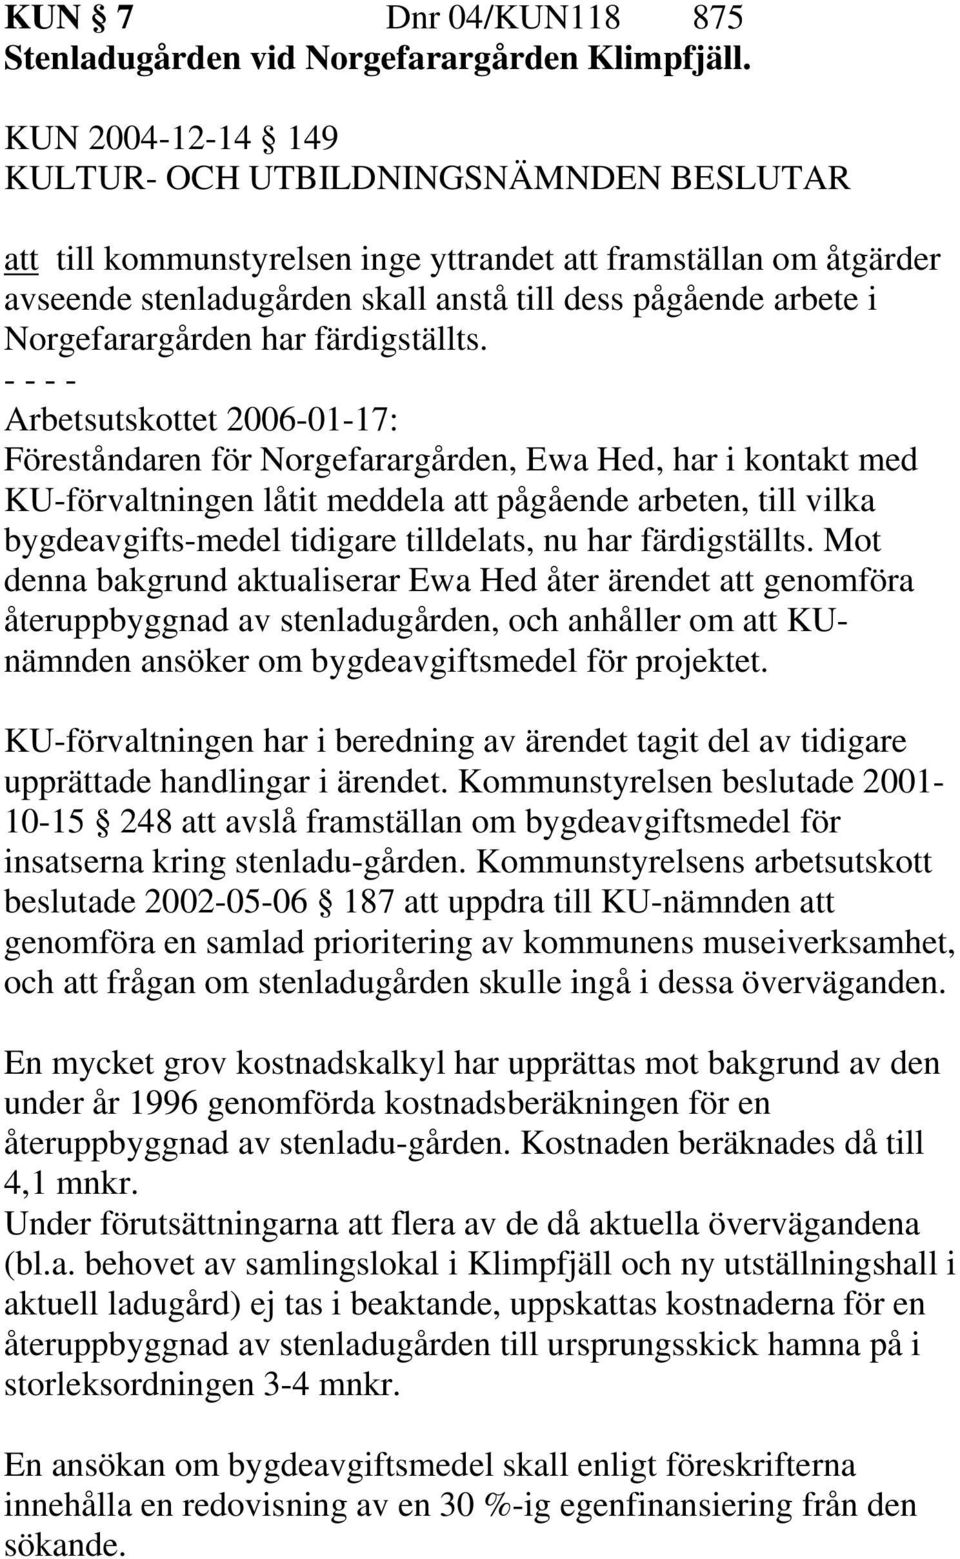 Arbetsutskottet 2006-01-17: Föreståndaren för Norgefarargården, Ewa Hed, har i kontakt med KU-förvaltningen låtit meddela att pågående arbeten, till vilka bygdeavgifts-medel tidigare tilldelats, nu